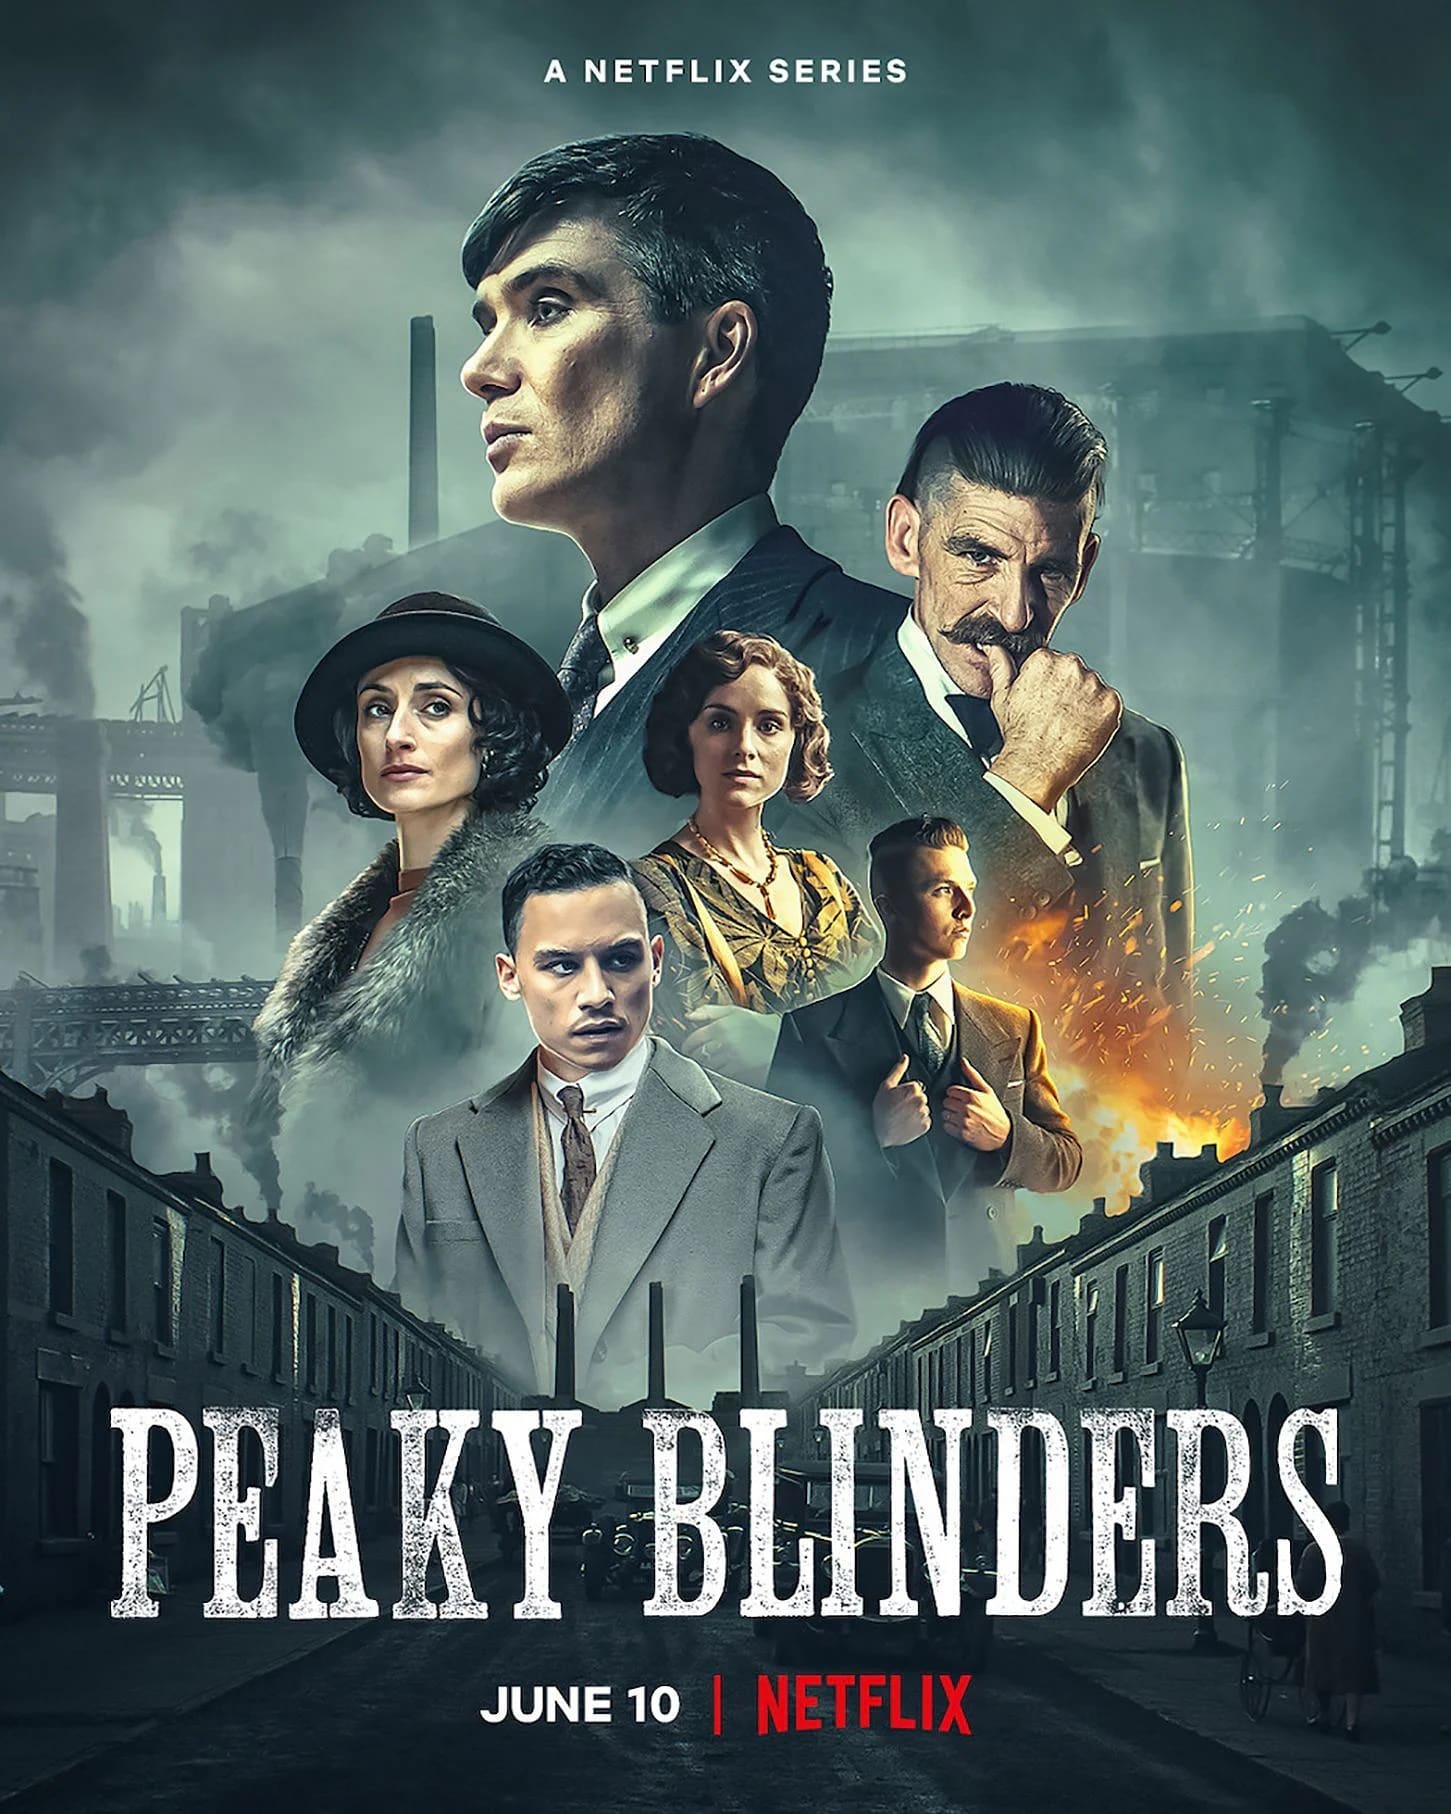 Peaky Blinders : พีกี้ ไบลน์เดอร์ส